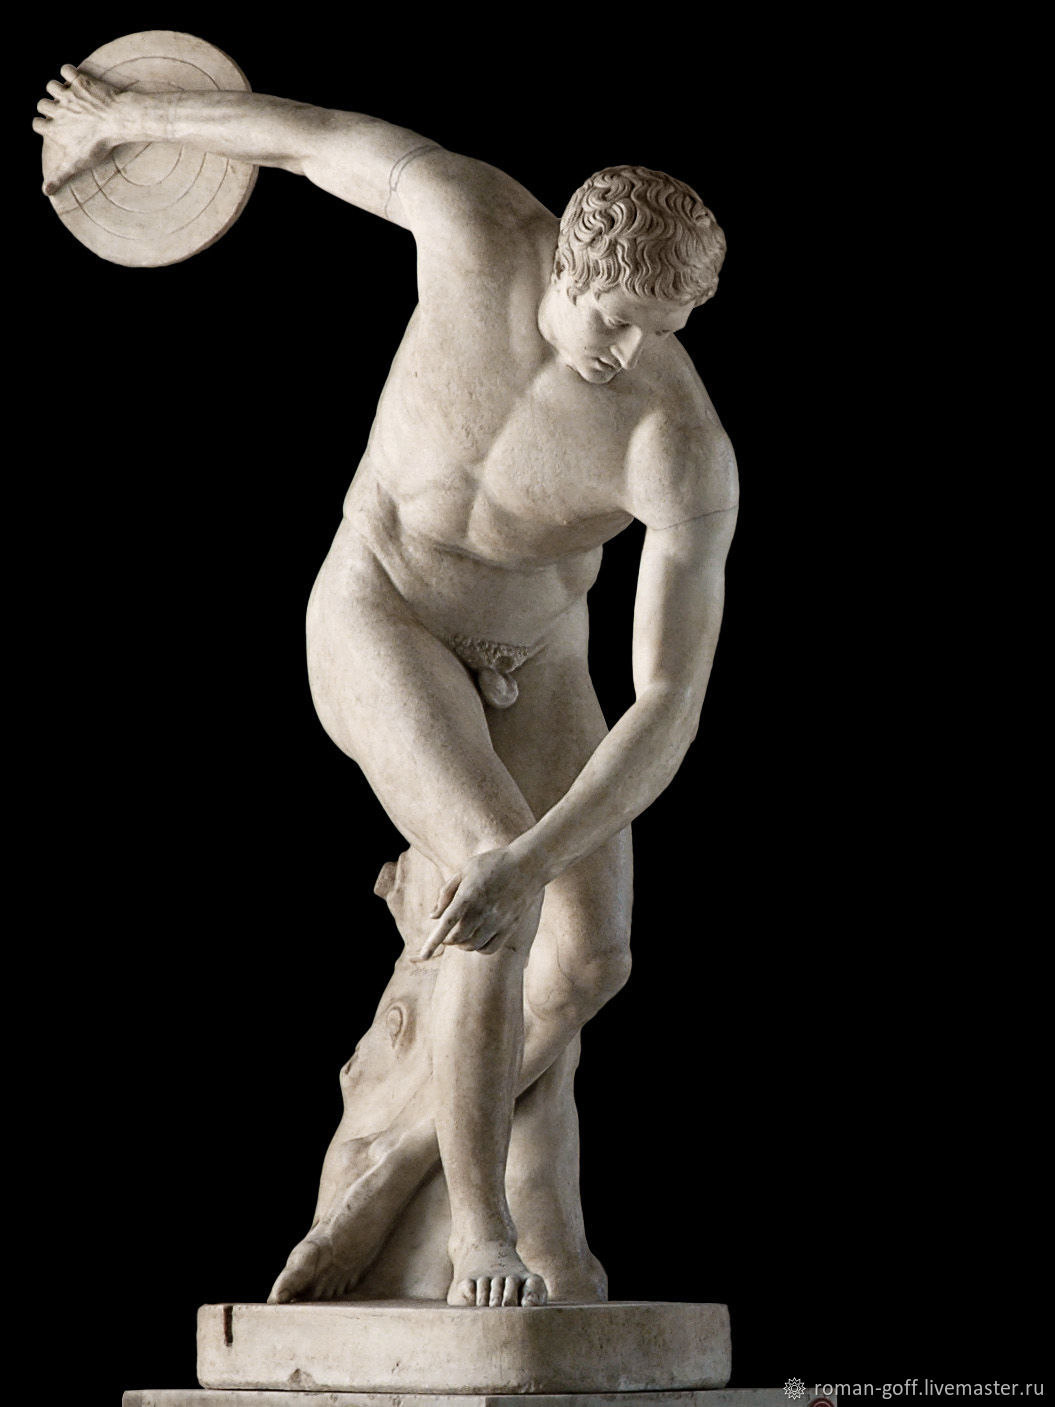 Произведение мирона. Дискобол Микеланджело. Дискобол скульптура древней Греции.